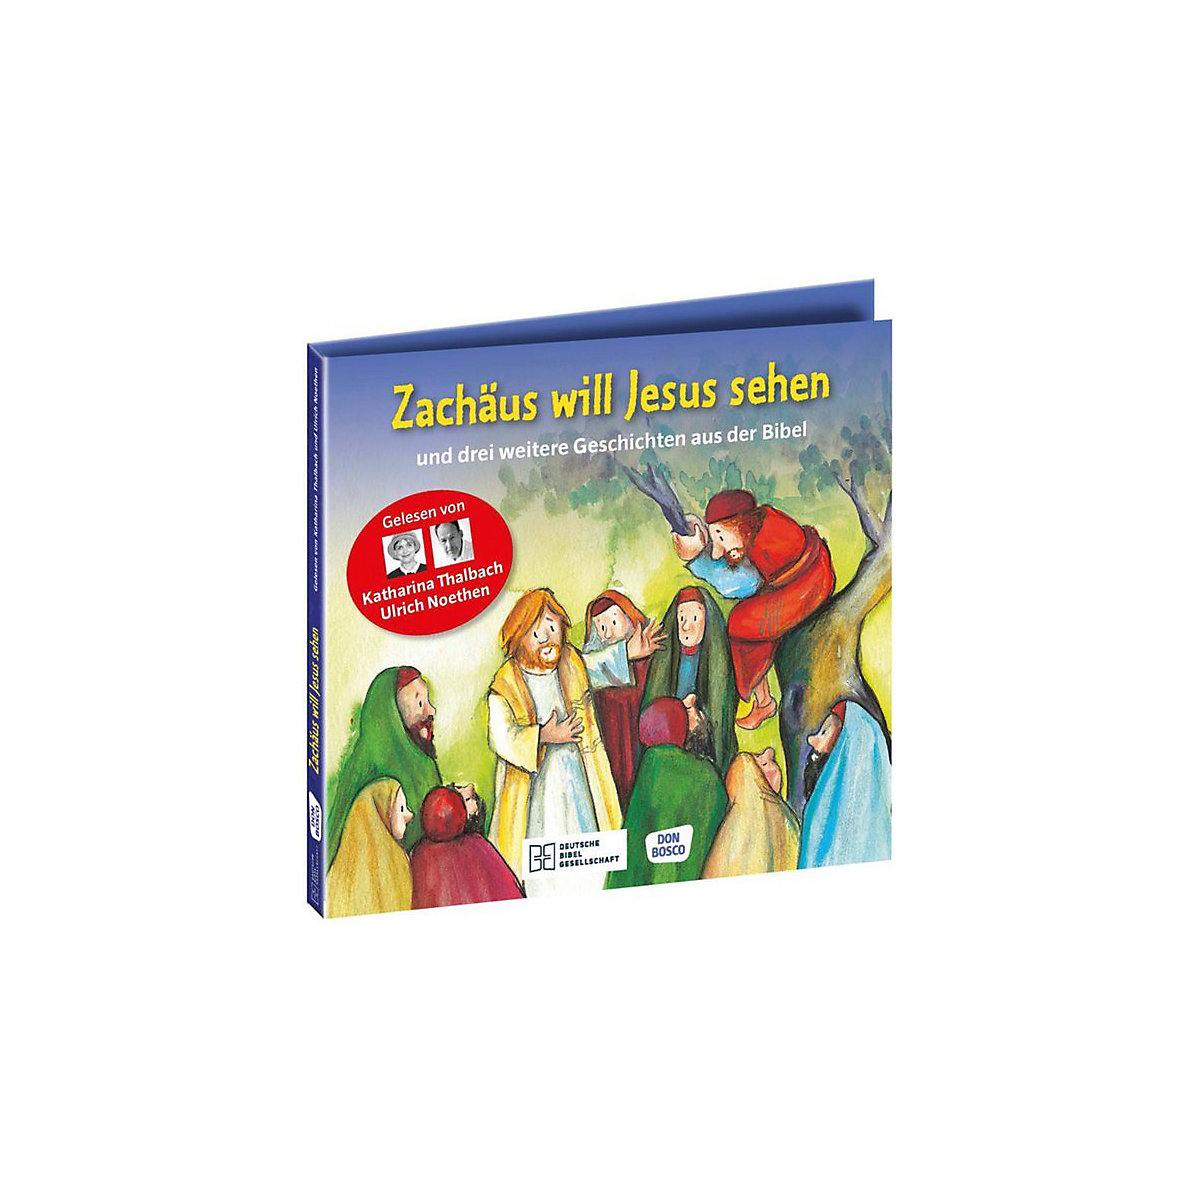 Die Hörbibel für Kinder: Zachäus will Jesus sehen Audio-CD